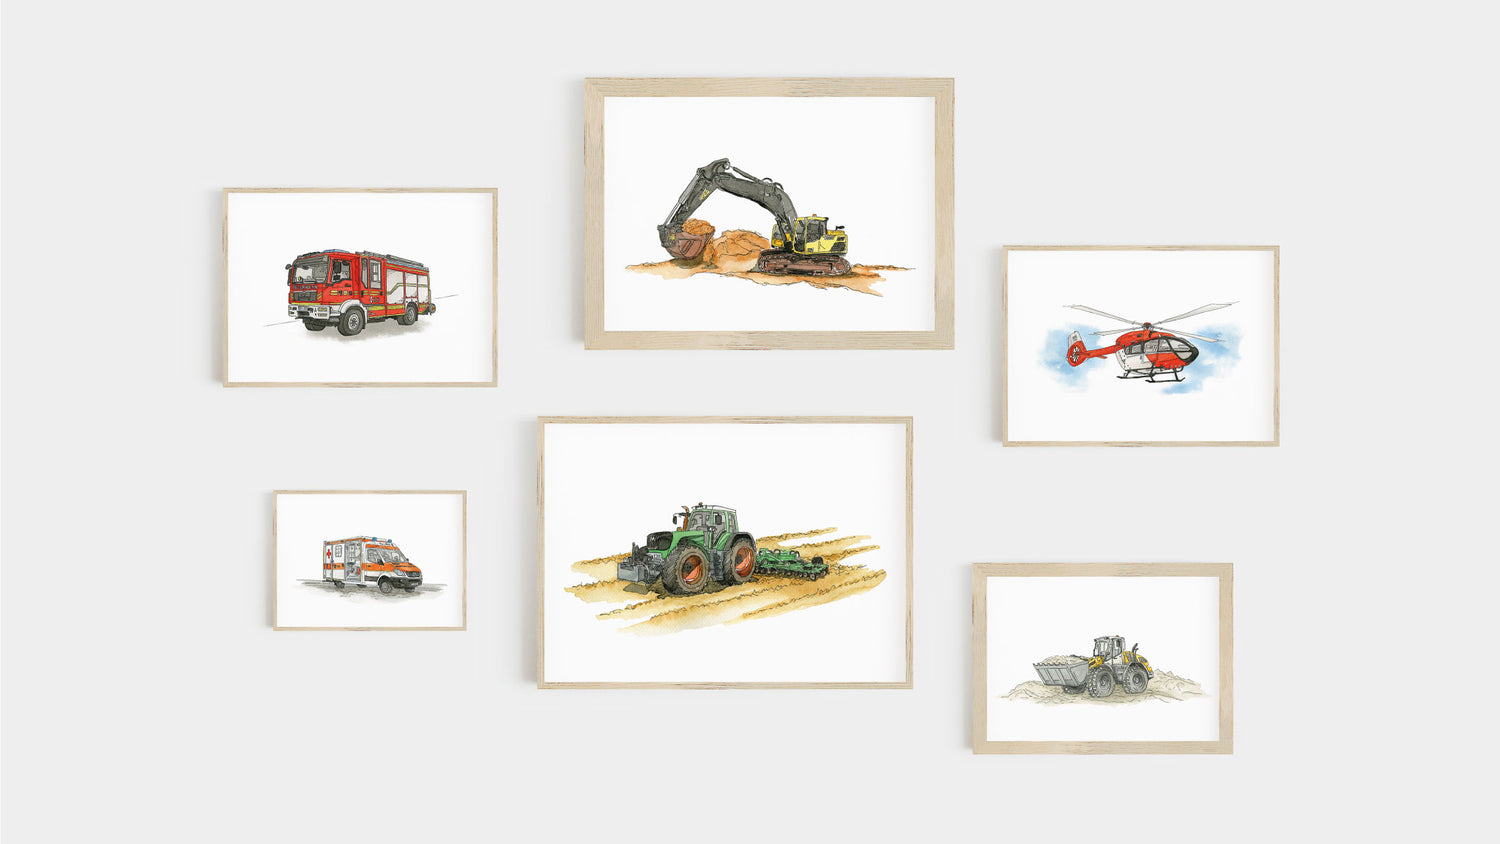 Fahrzeug Poster in Holz Bilderrahmen: Traktor, Bagger, Radlader, Hubschrauber, Feuerwehr und Krankenwagen